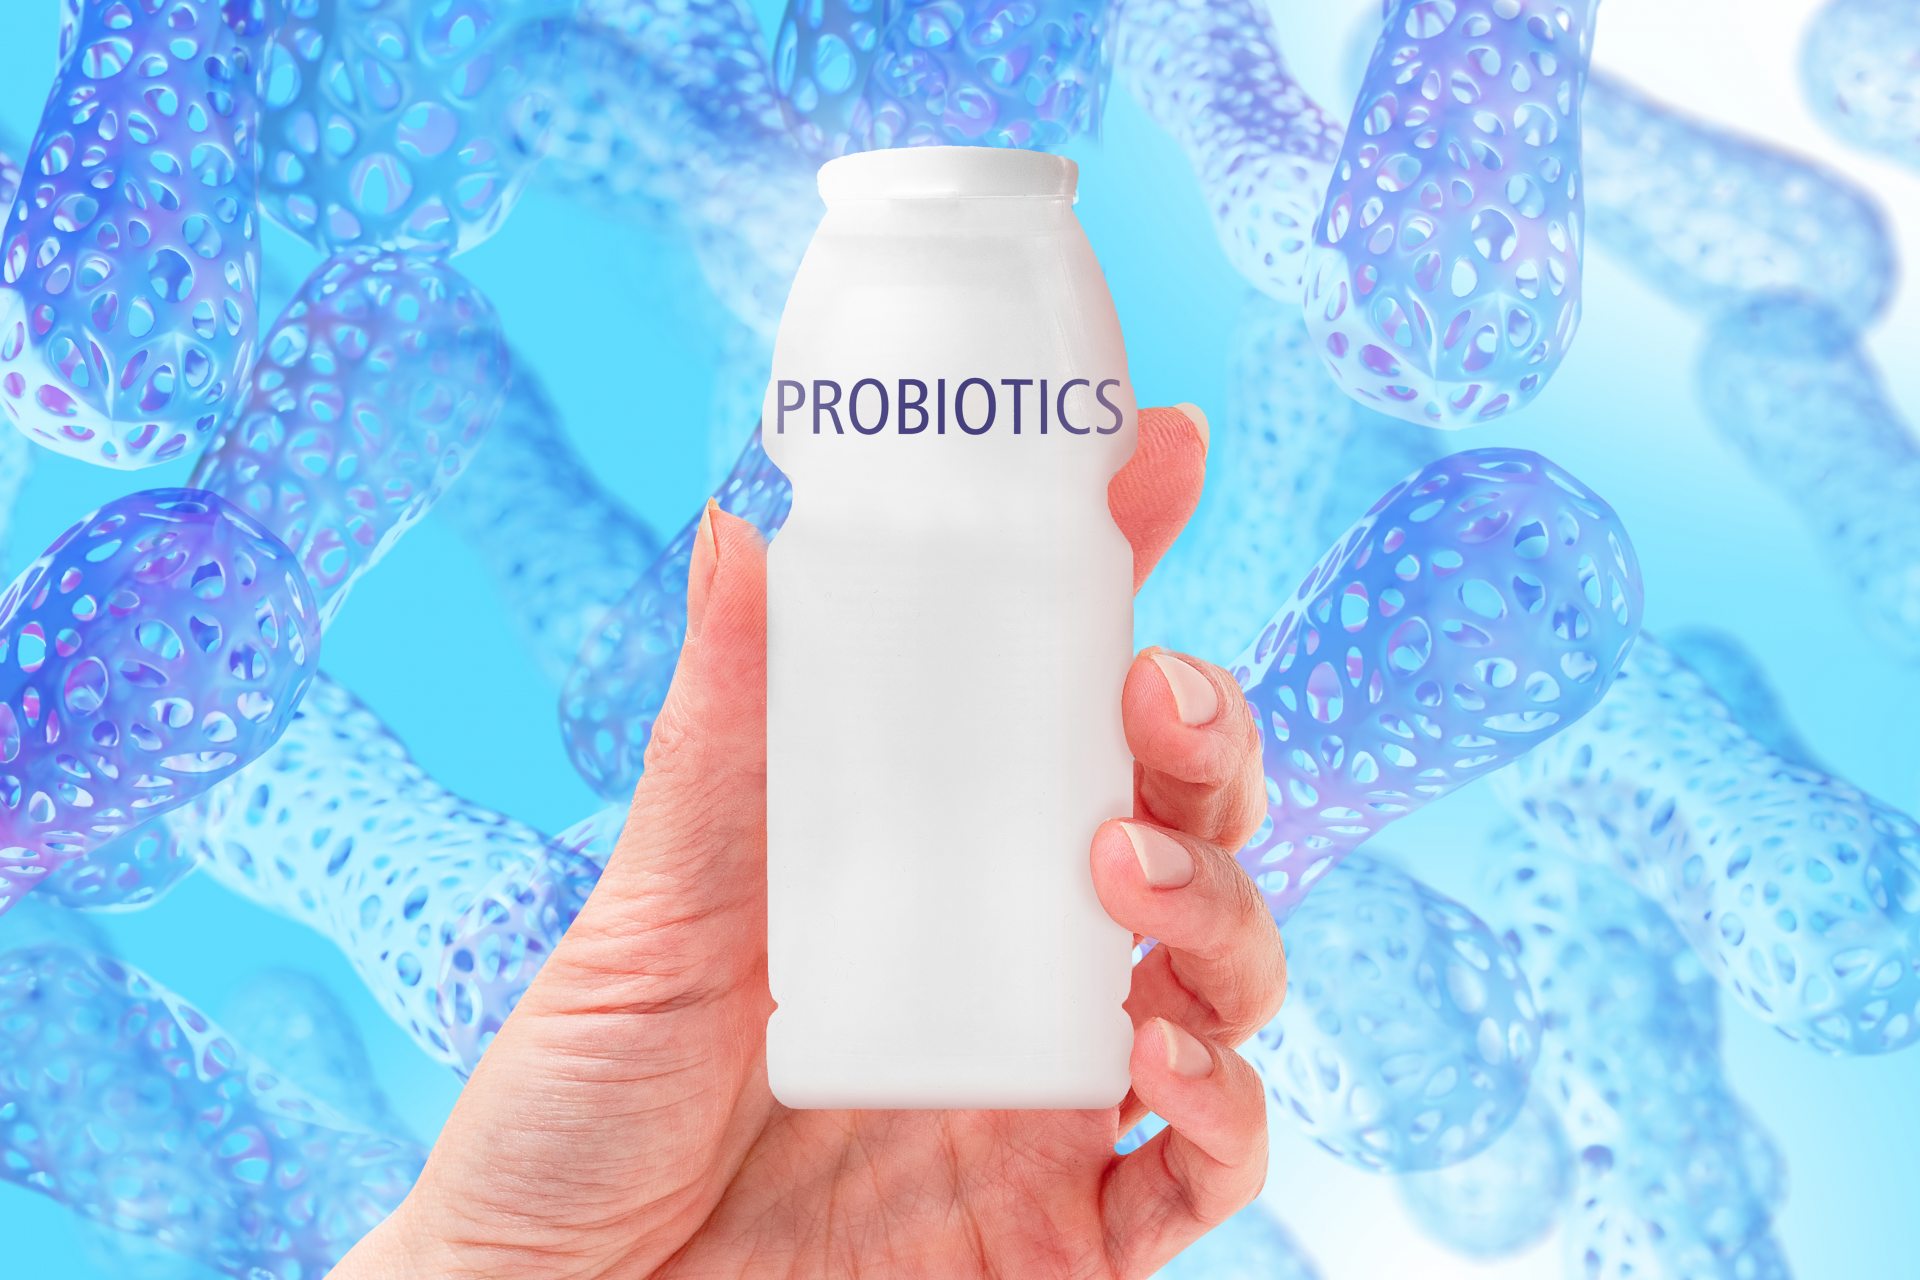 Các nhà khoa học đã chứng minh probiotics (lợi khuẩn) có khả năng giúp giảm nồng độ kim loại nặng trong máu. Nguồn: IstockCác nhà khoa học đã chứng minh probiotics (lợi khuẩn) có khả năng giúp giảm nồng độ kim loại nặng trong máu. Nguồn: Istock